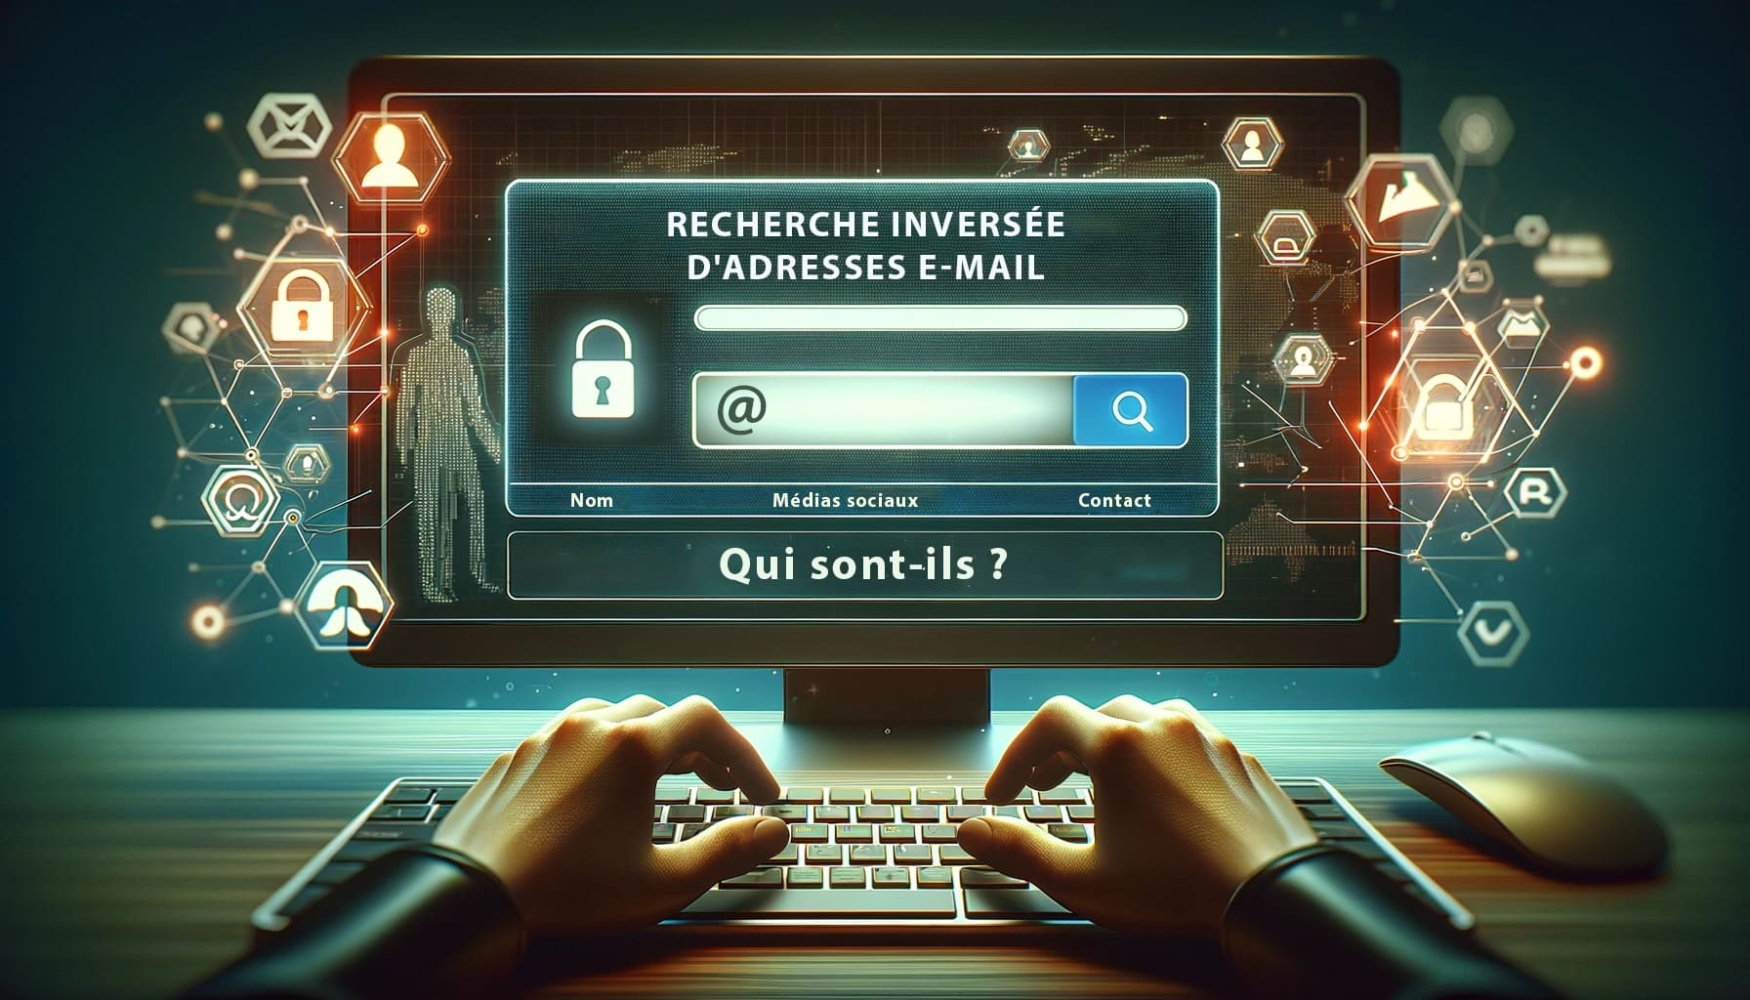 Les mains d'une personne tapant sur le clavier d'un ordinateur portable, avec un écran vibrant affichant une "recherche inversée d'adresses électroniques".